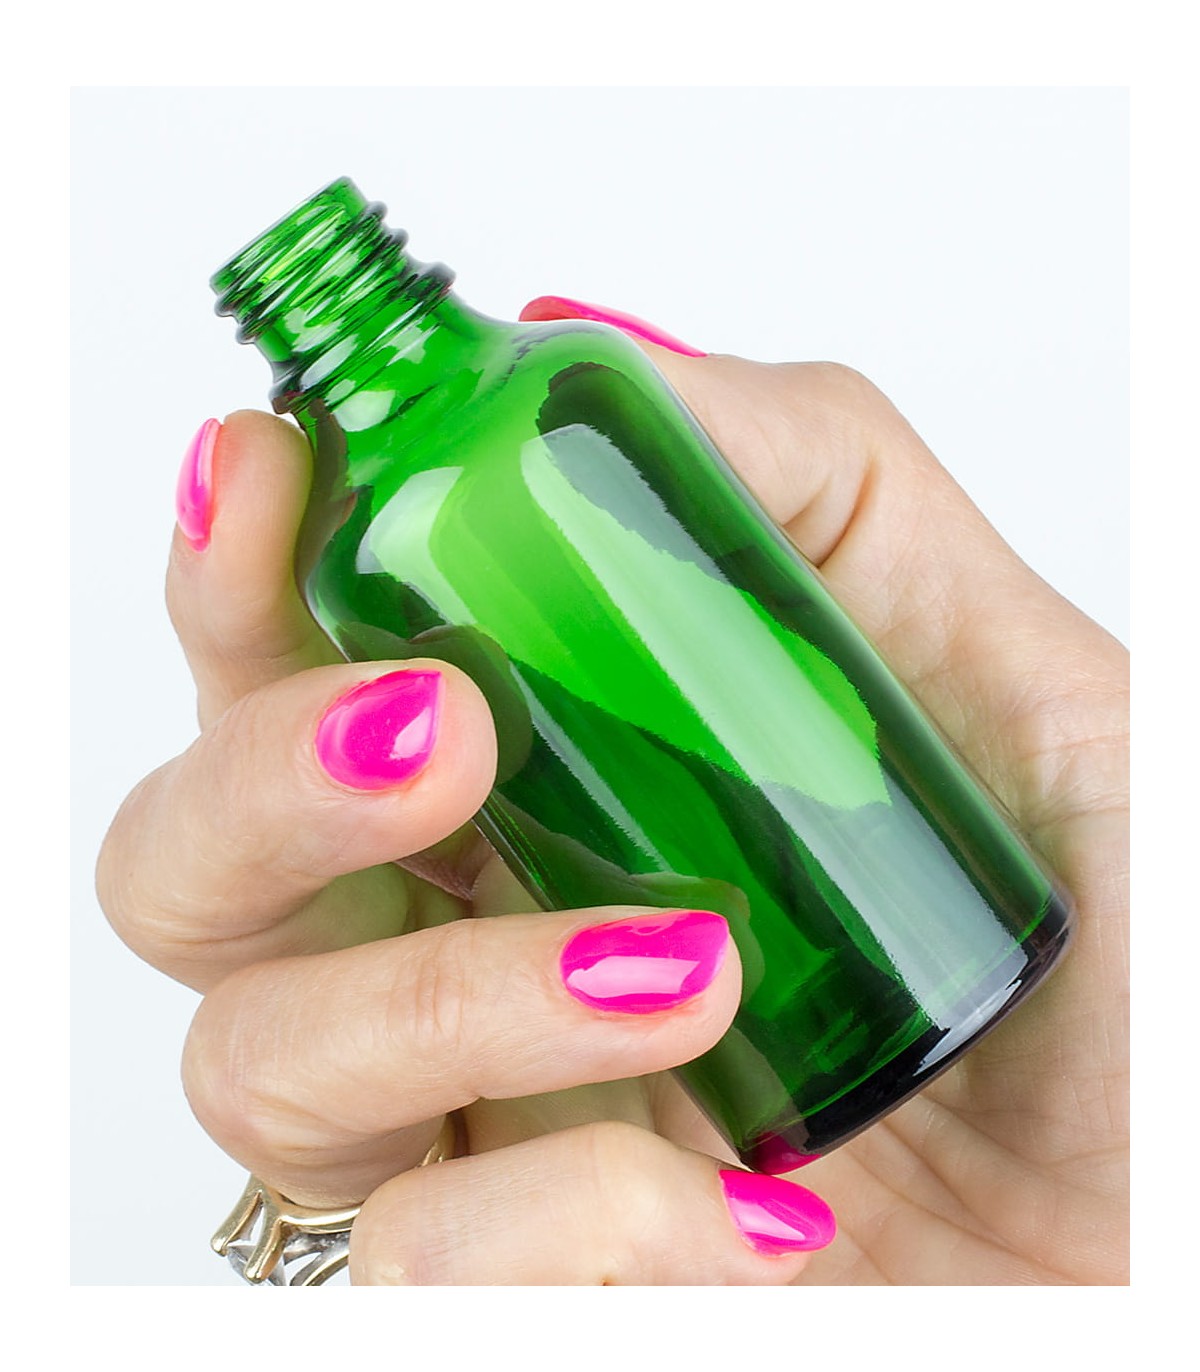 Green bottle DIN18, 50 ml